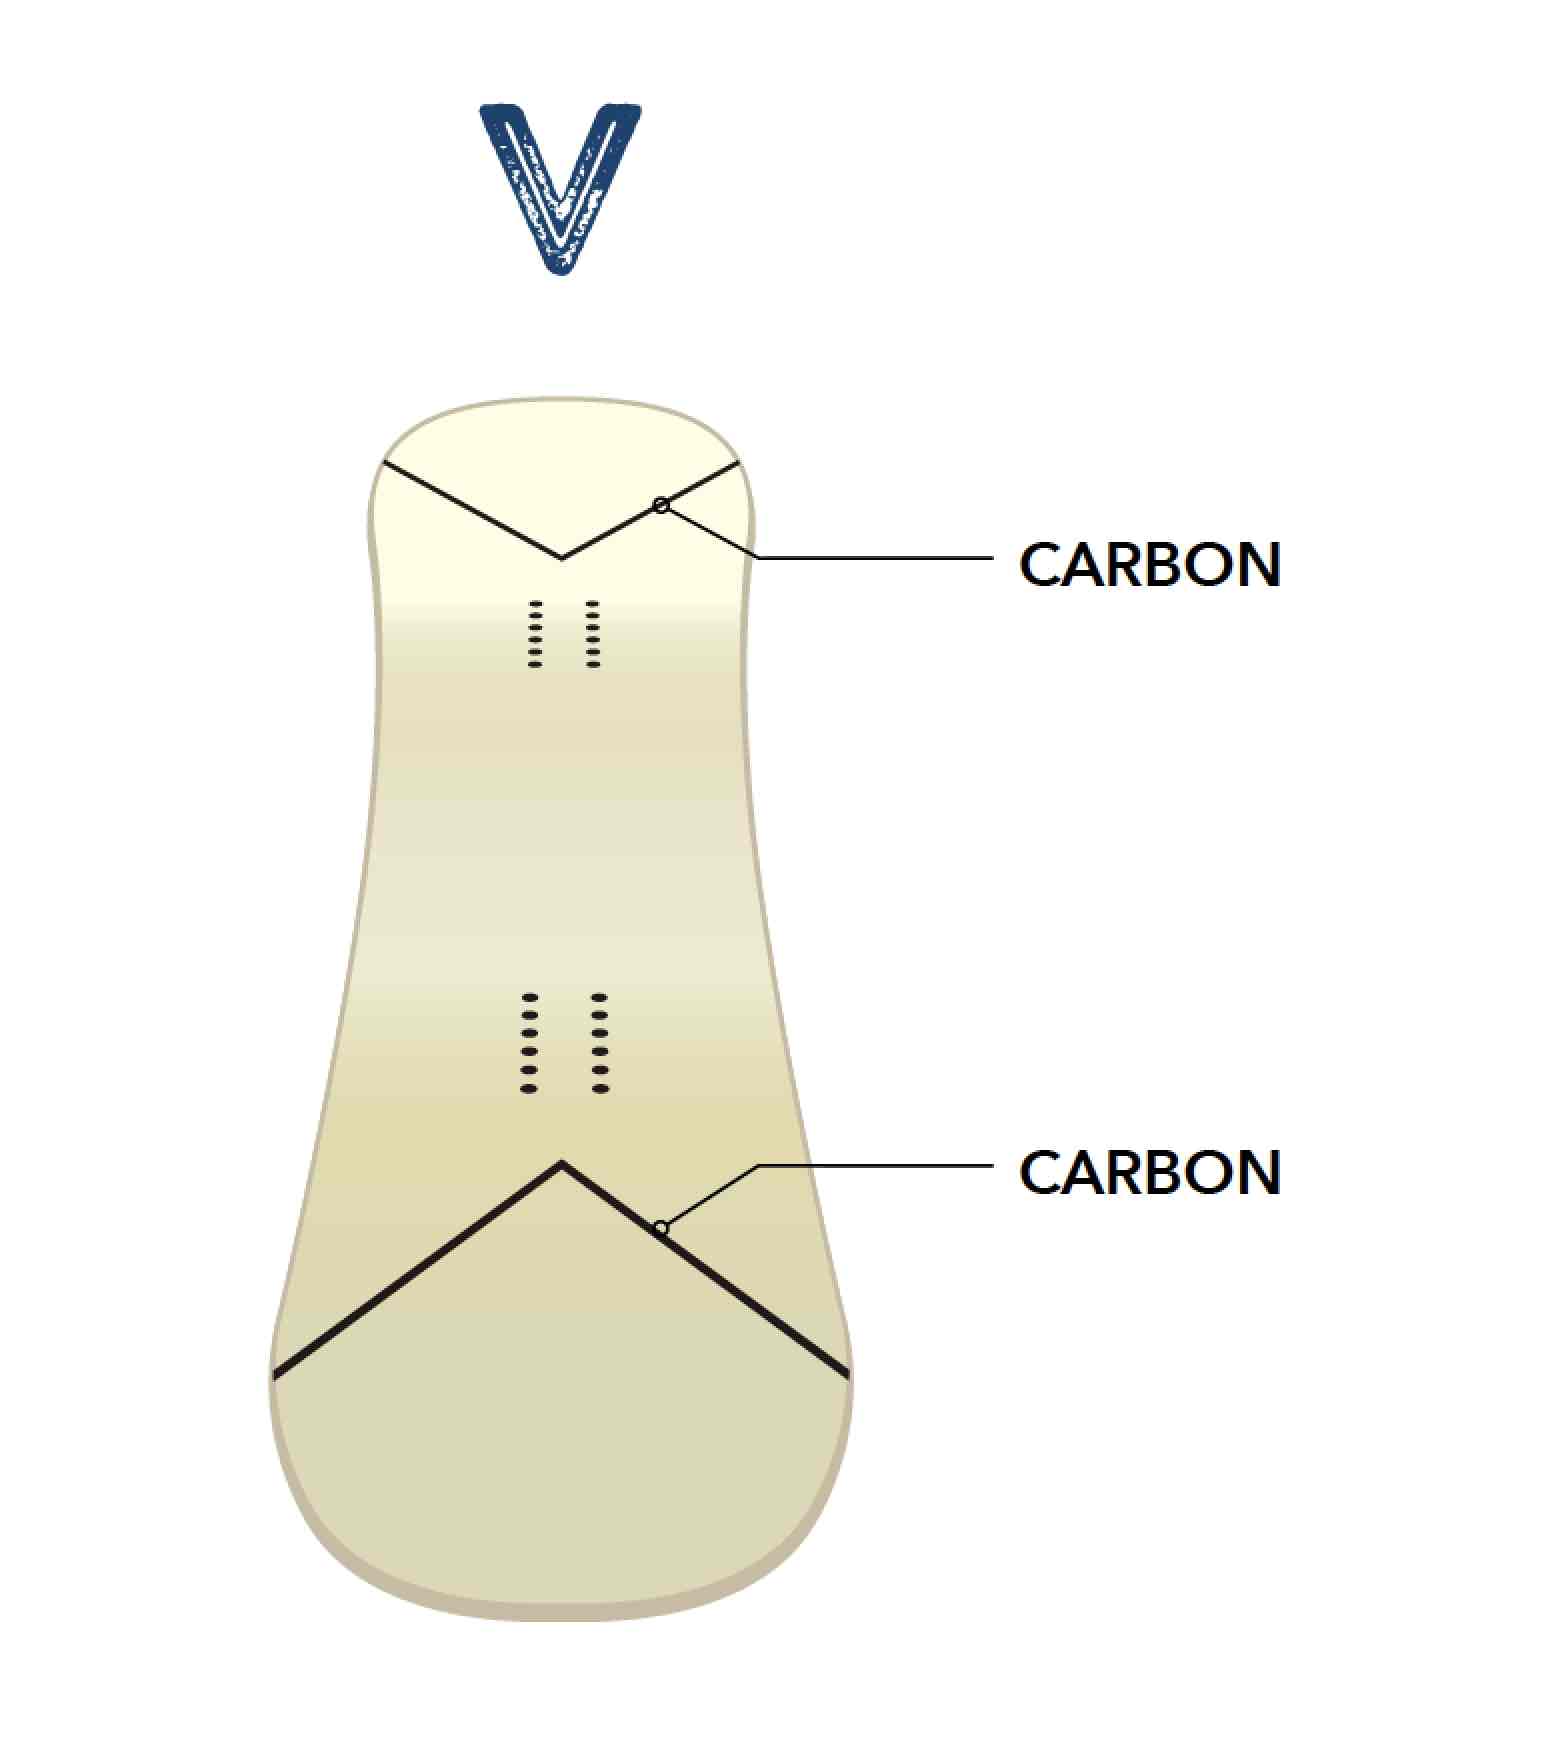 从这张图中可以看出，V 形碳纤维内置于鼻子和尾部。这是为了支持粘性和排斥性，是使板子柔软但强大的因素之一。换句话说，它是柔软的弹性，但它也很强大。